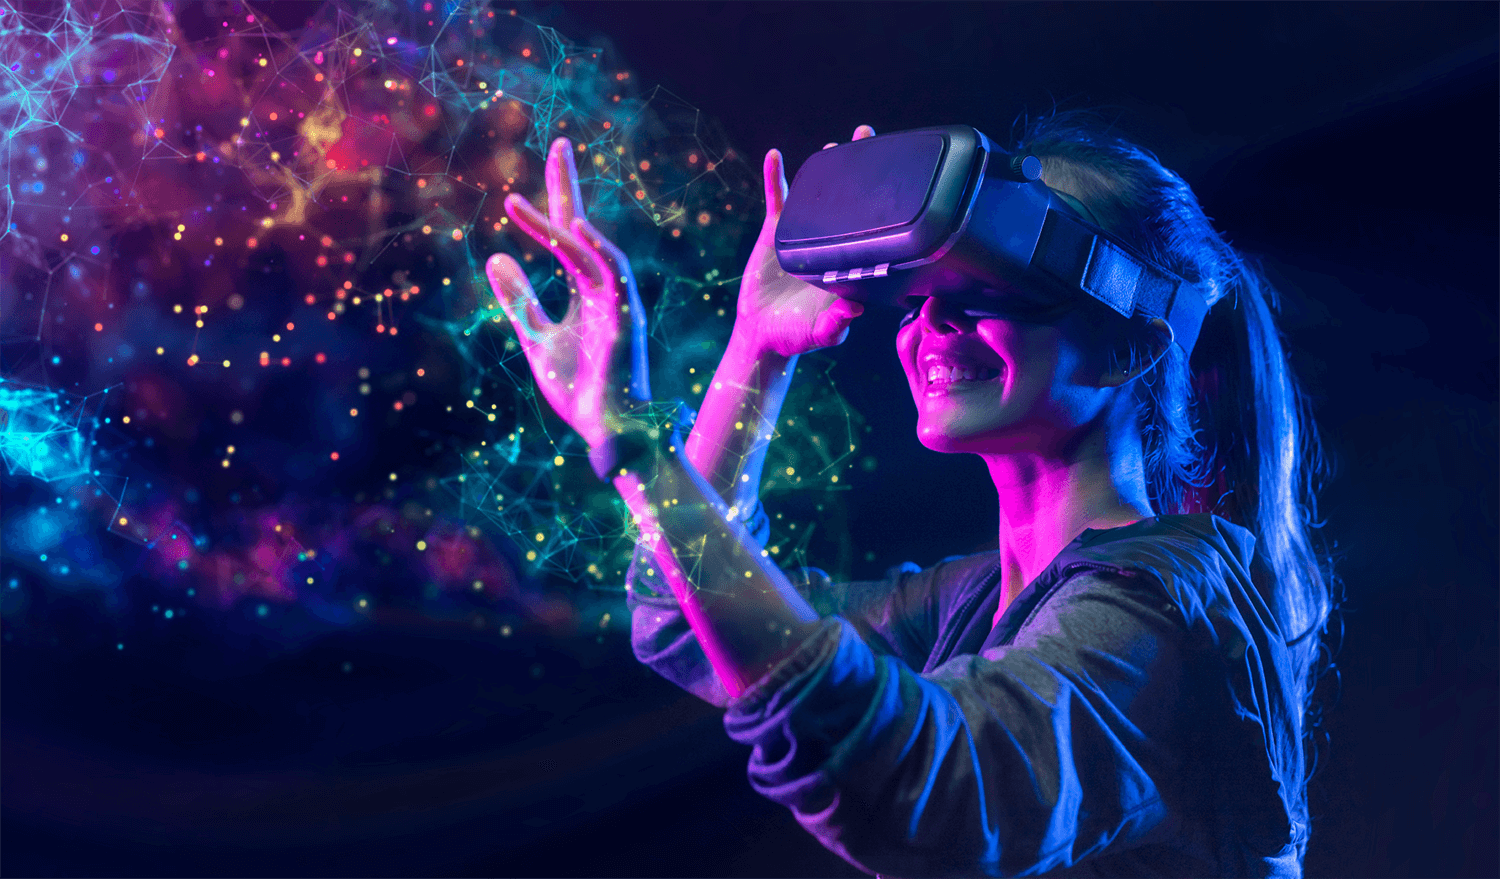 图片展示一位女性正戴着虚拟现实头盔，似乎在体验沉浸式VR内容，身边有彩色光点与线条构成的抽象图案环绕。